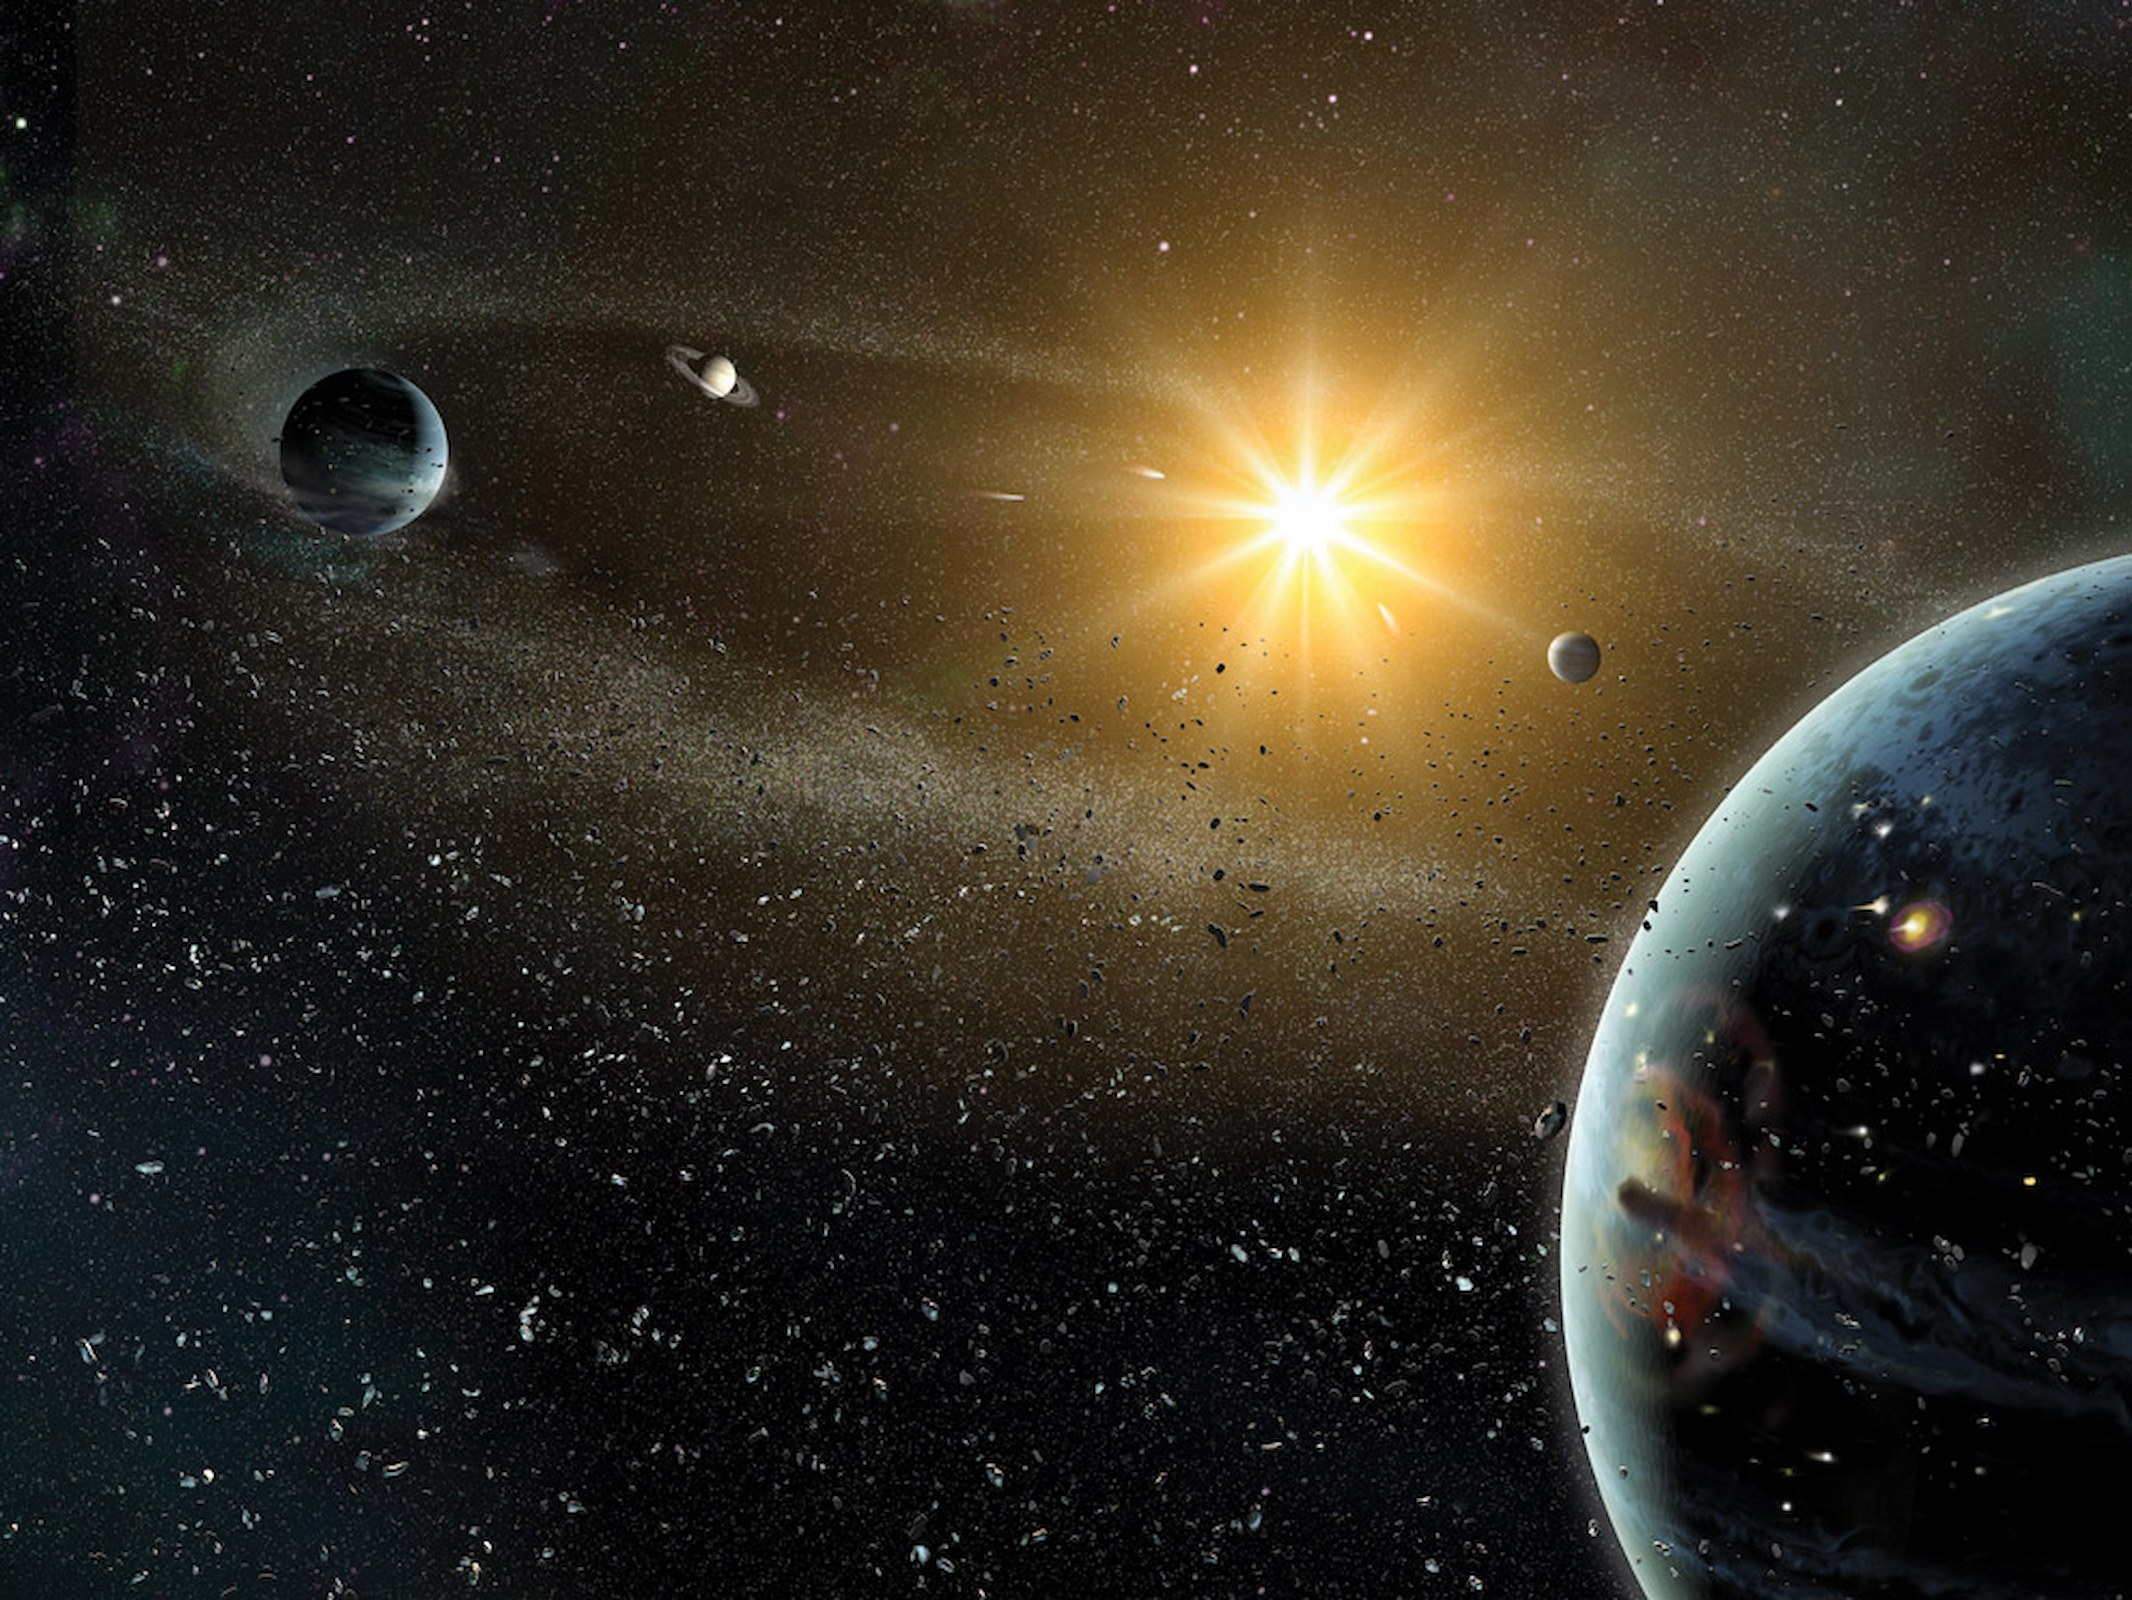 Les systèmes planétaires se forment dans le disque protoplanétaire qui tournoie autour d'une jeune étoile. © Dana Berry, Harold Levison, Dan Durda, SwRI.